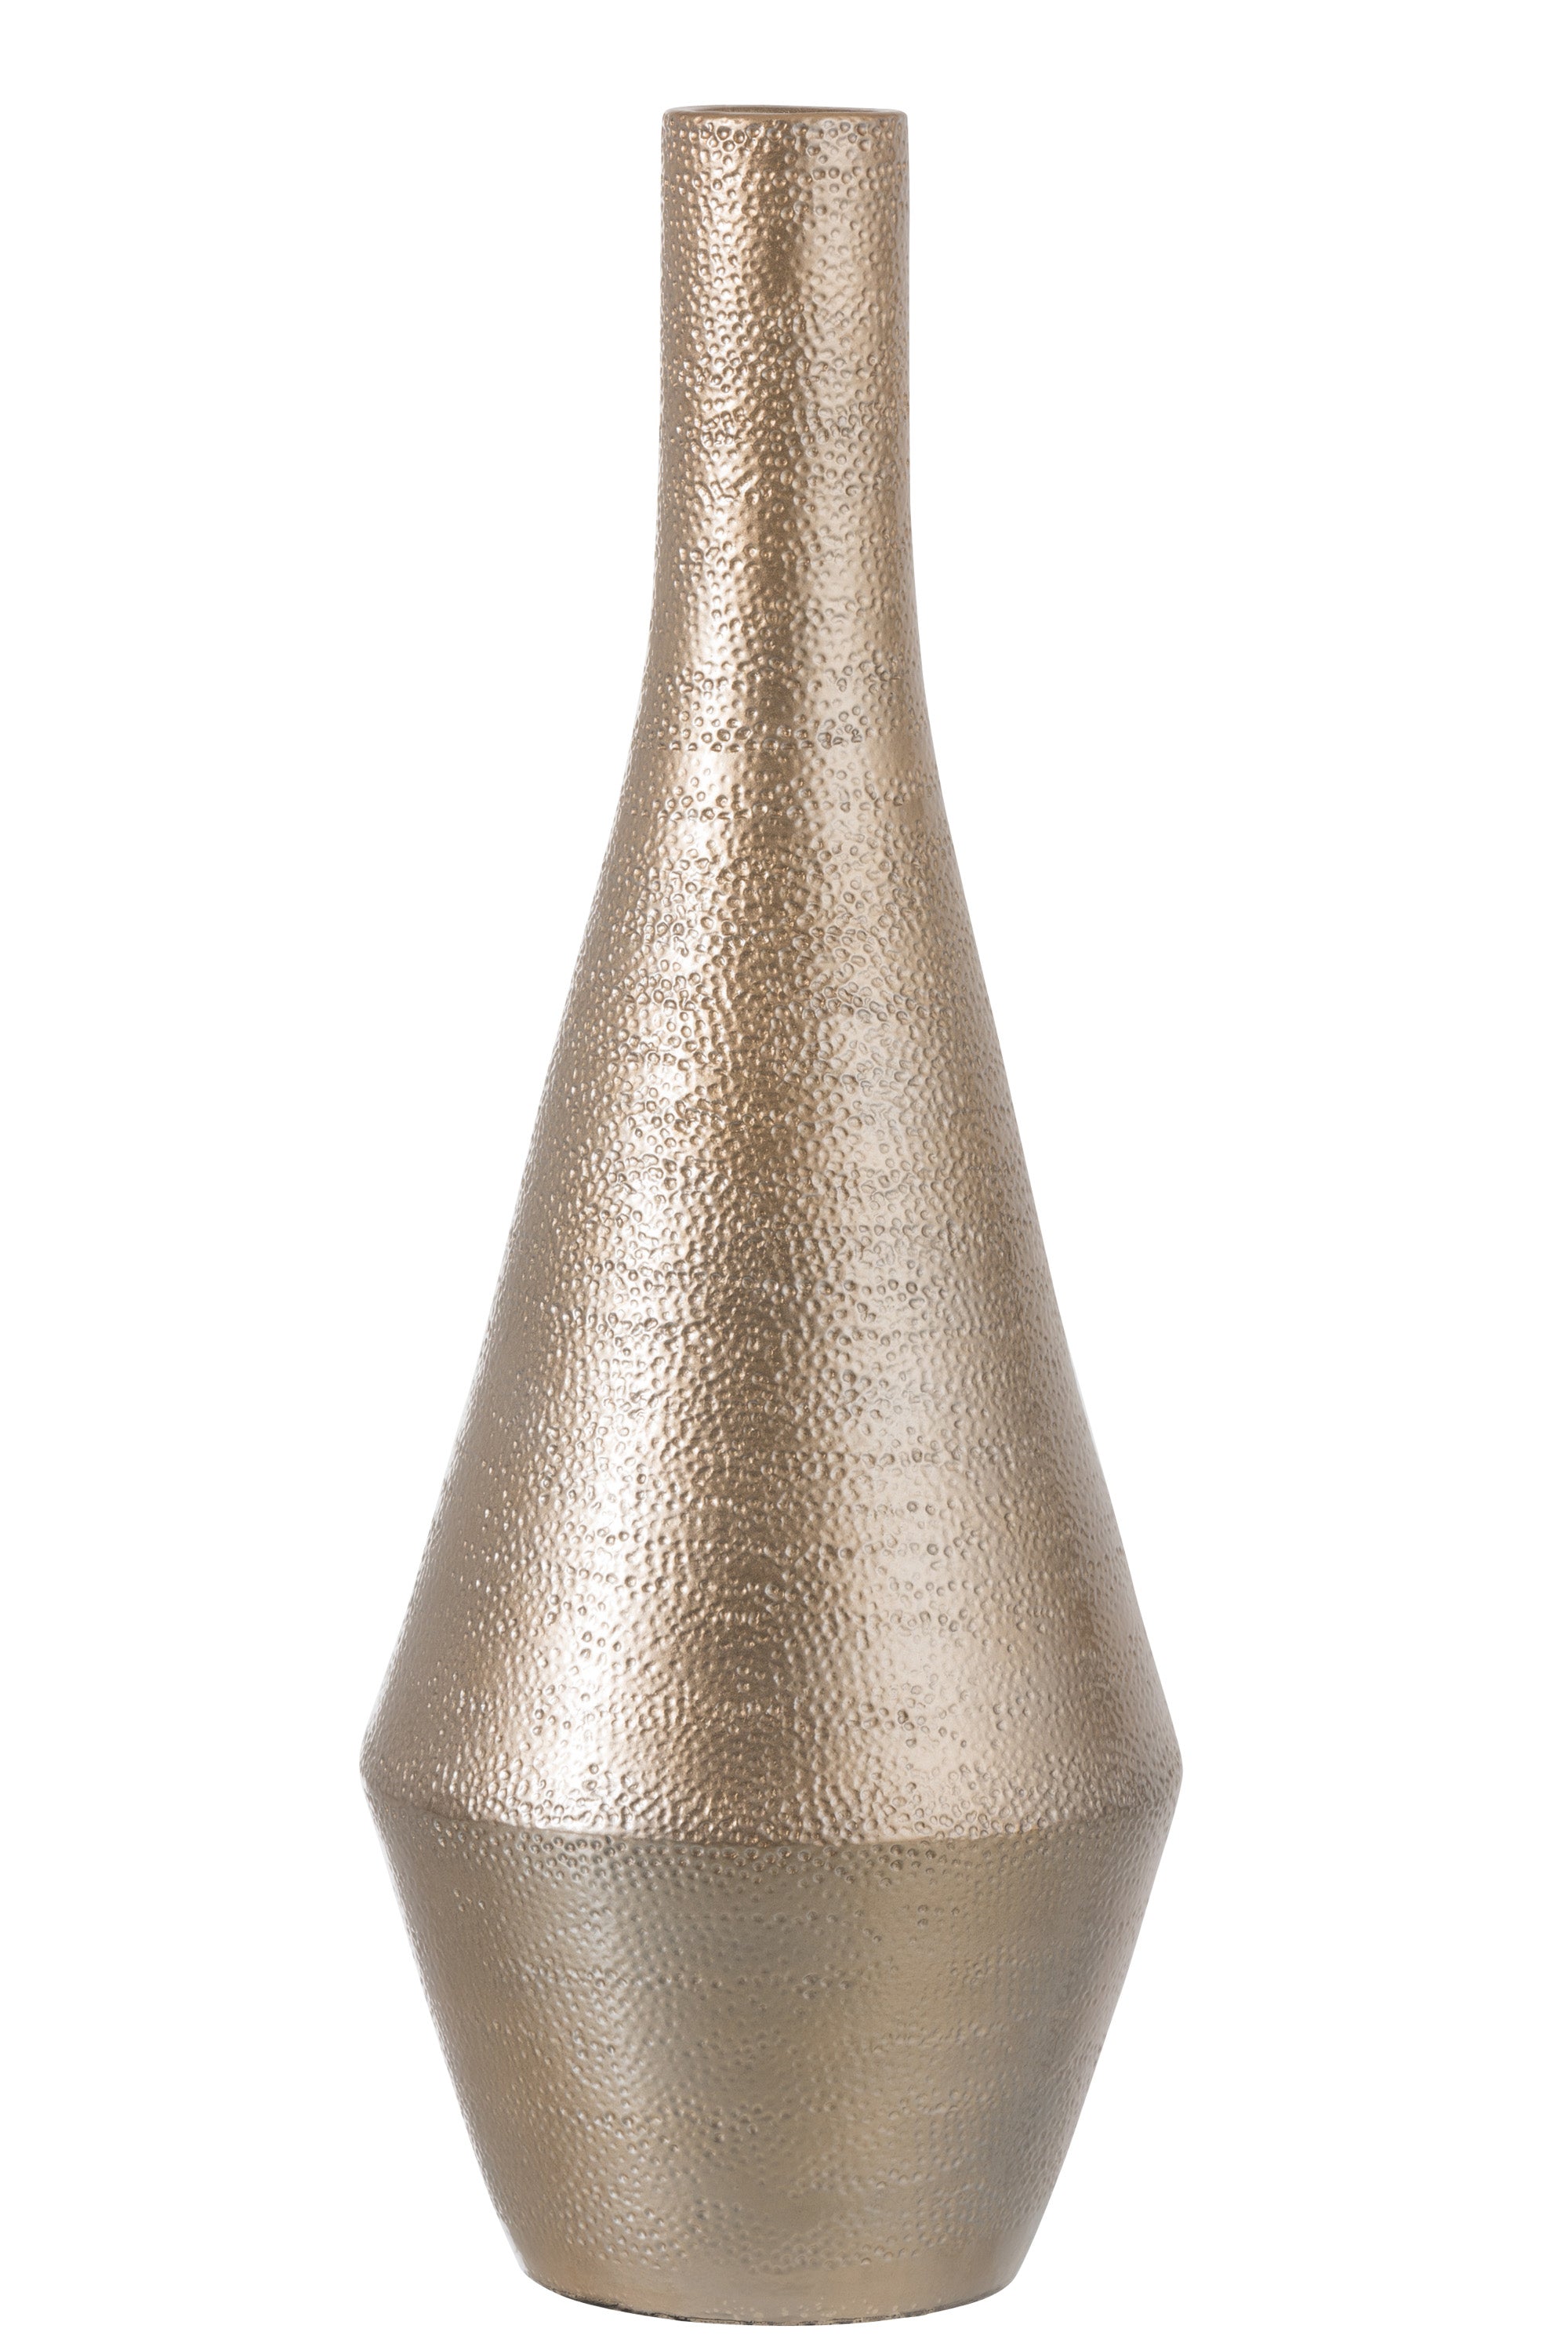 Vase Muster Terrakotta Gold Groß - (88706)